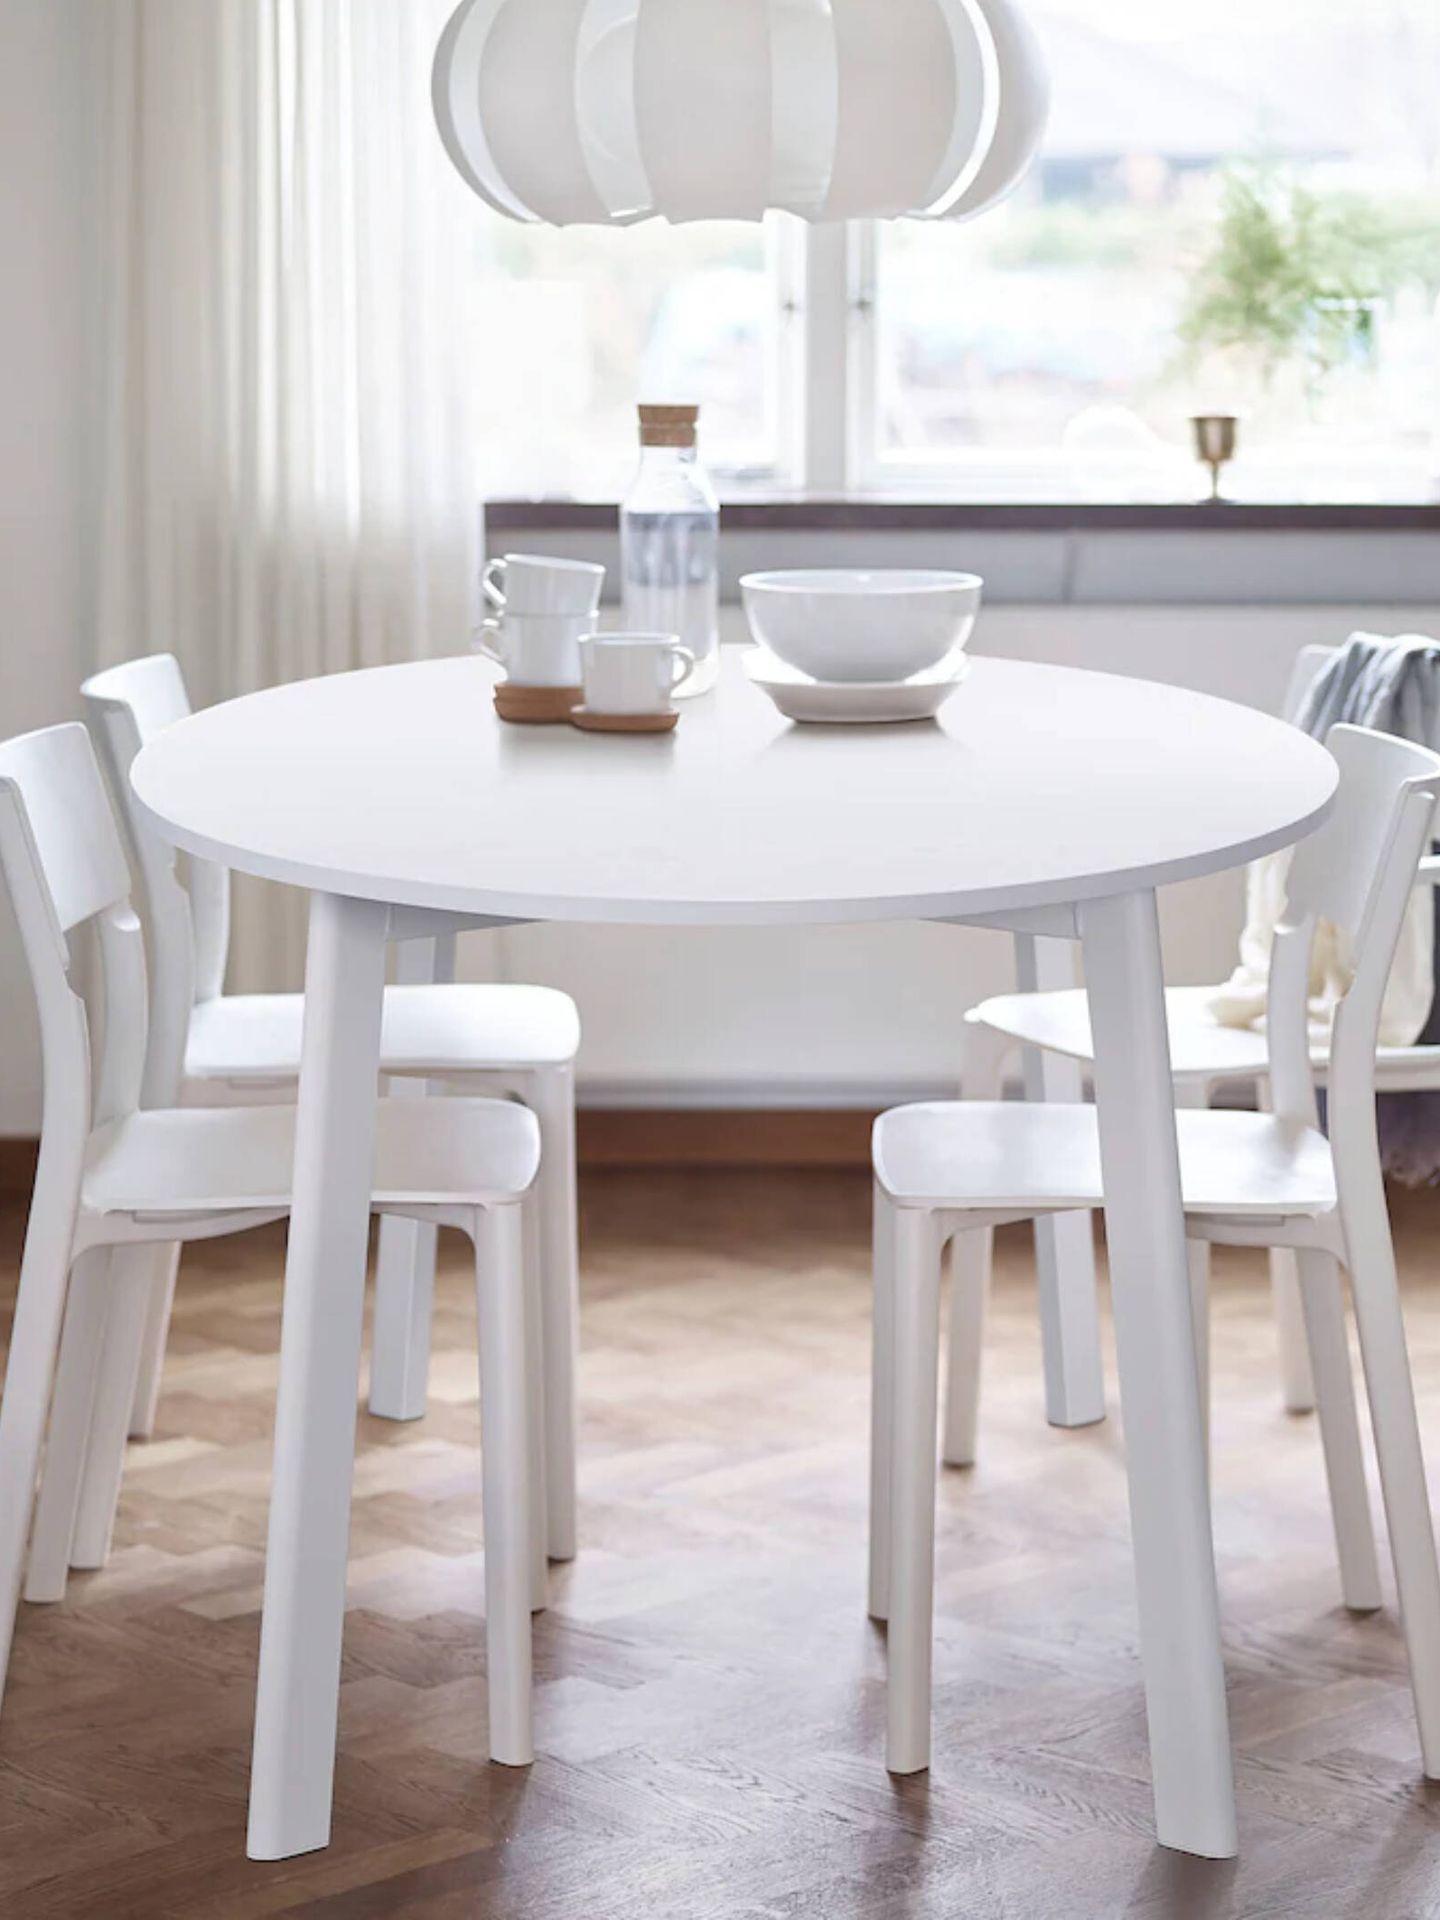 Mesas de comedor en Ikea para casas de todos los tamaños. (Cortesía)